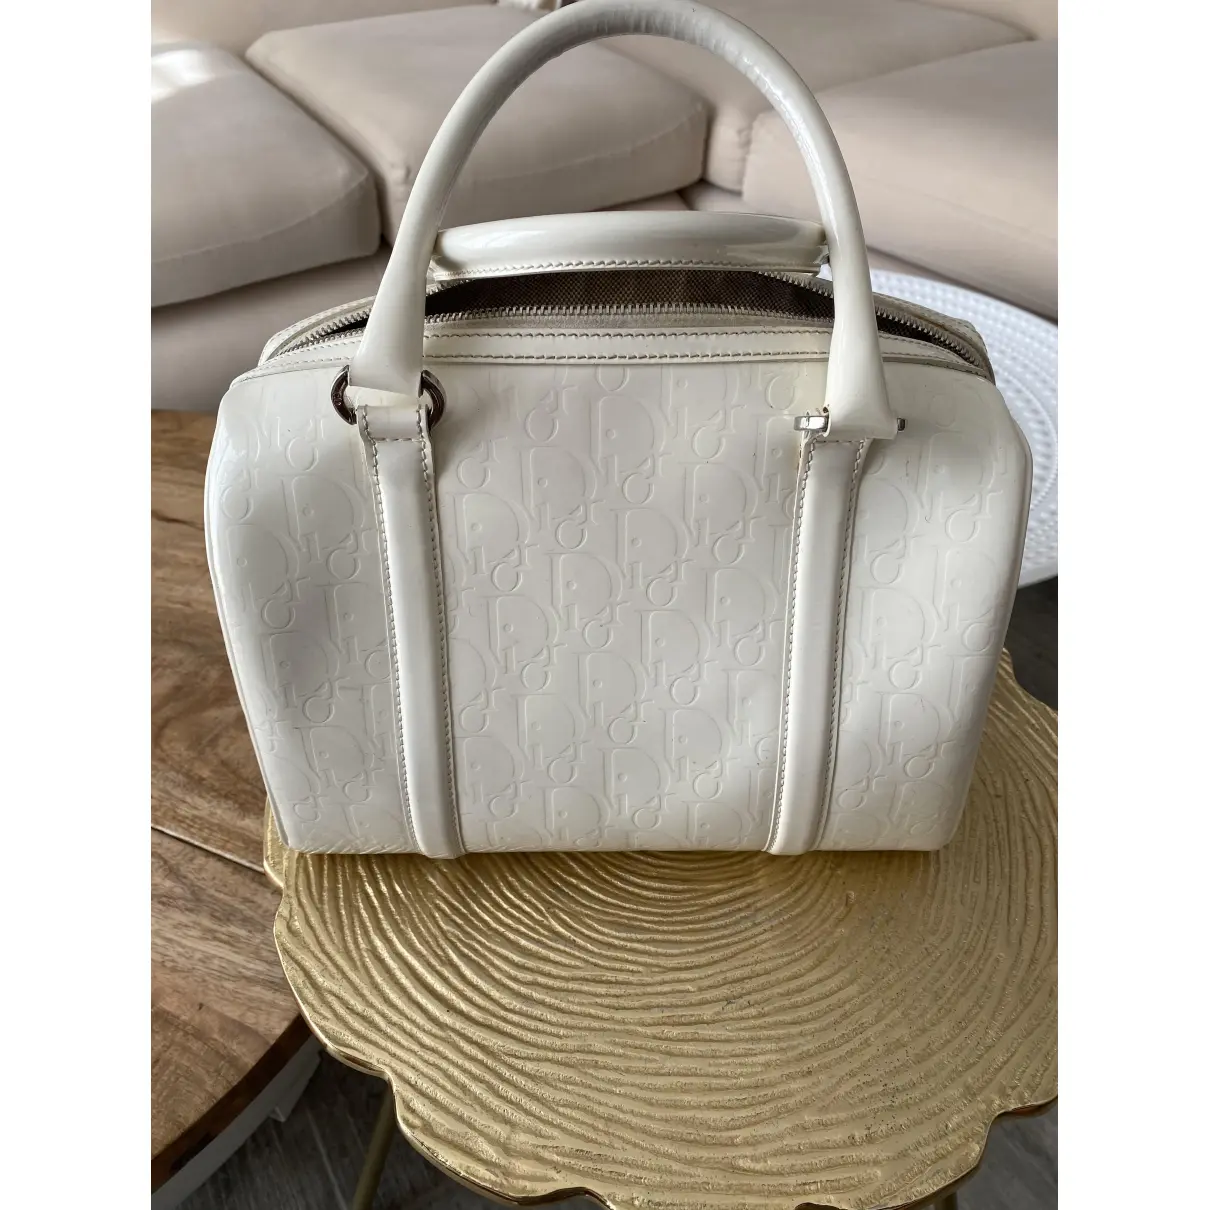 Buy Dior Patent leather handbag online - Vintage